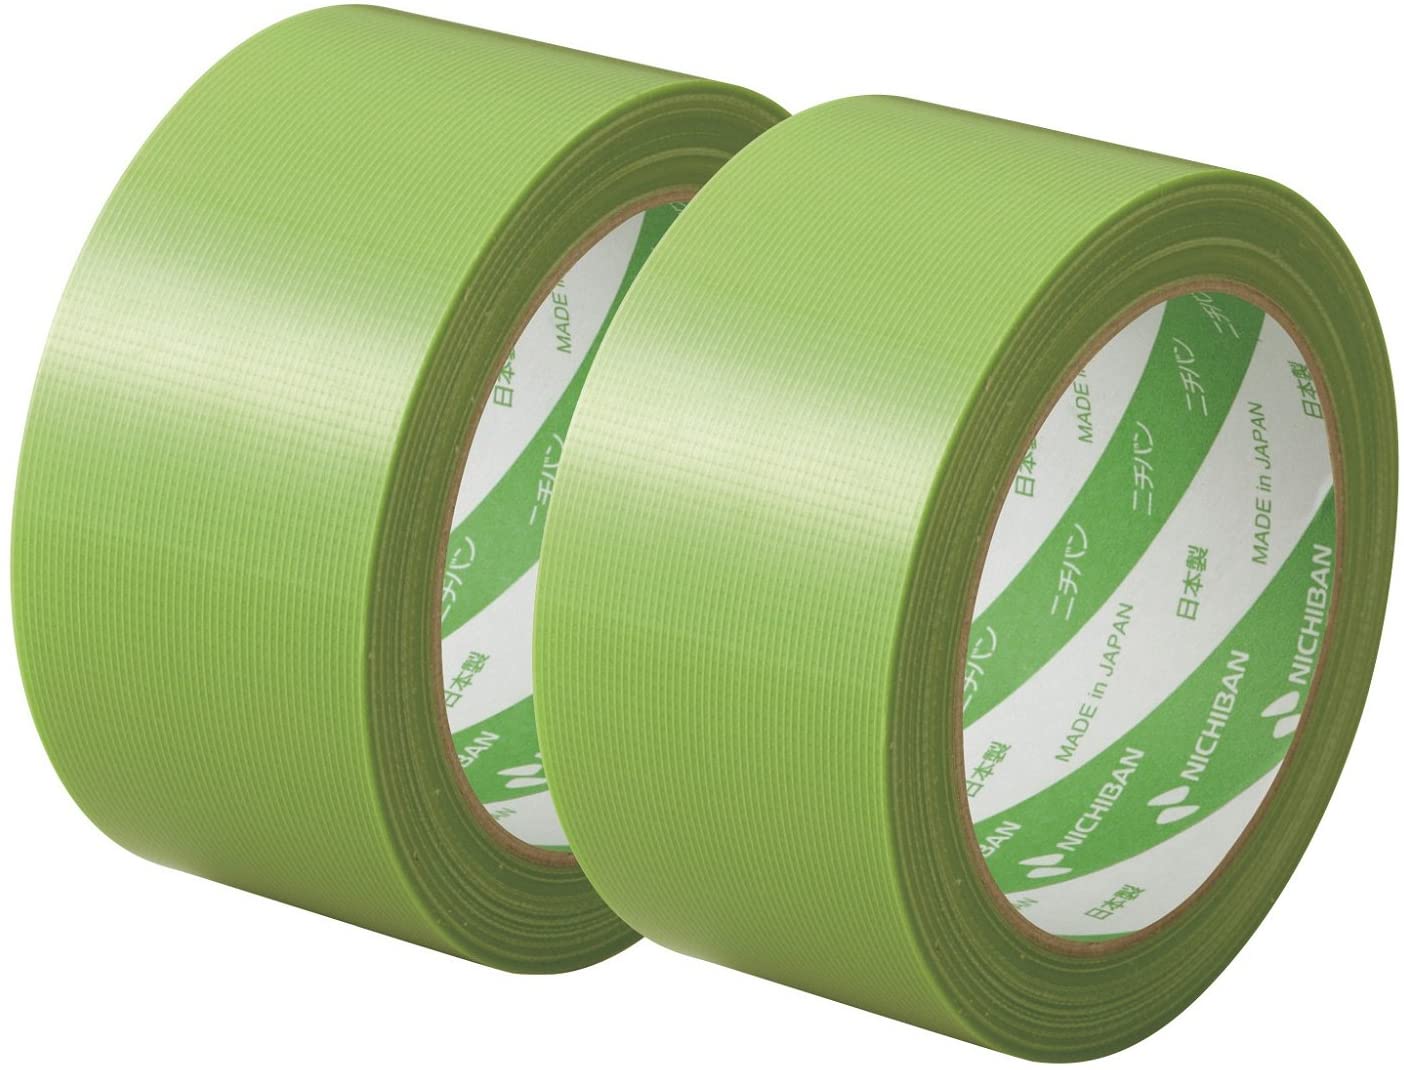 倉庫 直送 代引不可 まとめ 養生テープ 50mmx50m 緑別商品の同時注文不可